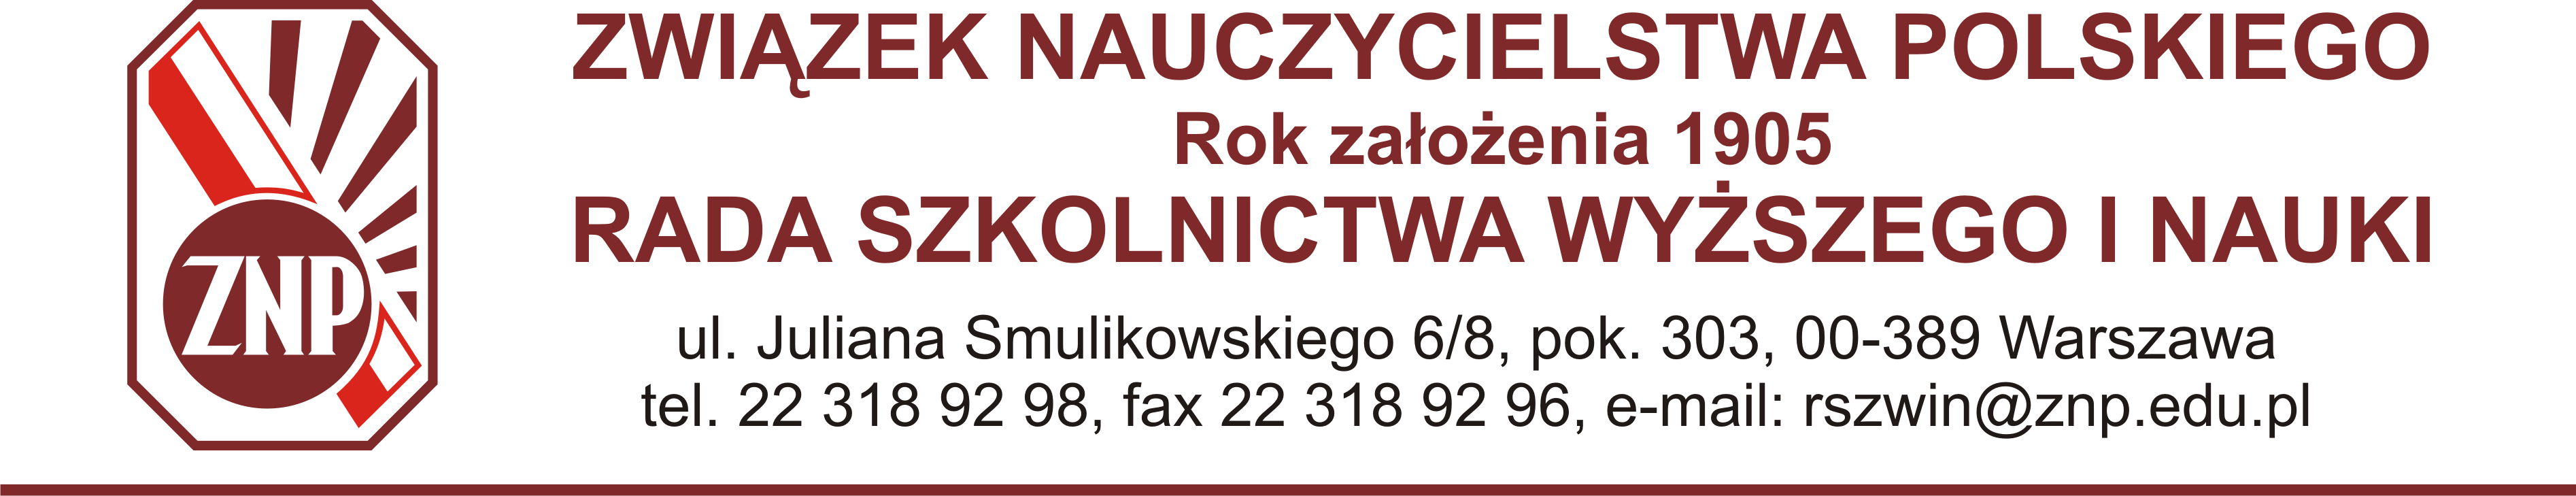 Warszawa, 22-02-2013 Sprawozdanie Rady Szkolnictwa Wyższego i Nauki Związku Nauczycielstwa Polskiego z działalności w roku 2012 Działalność Rady SzWiN ZNP oraz Prezydium Rady w 2012 roku oprócz